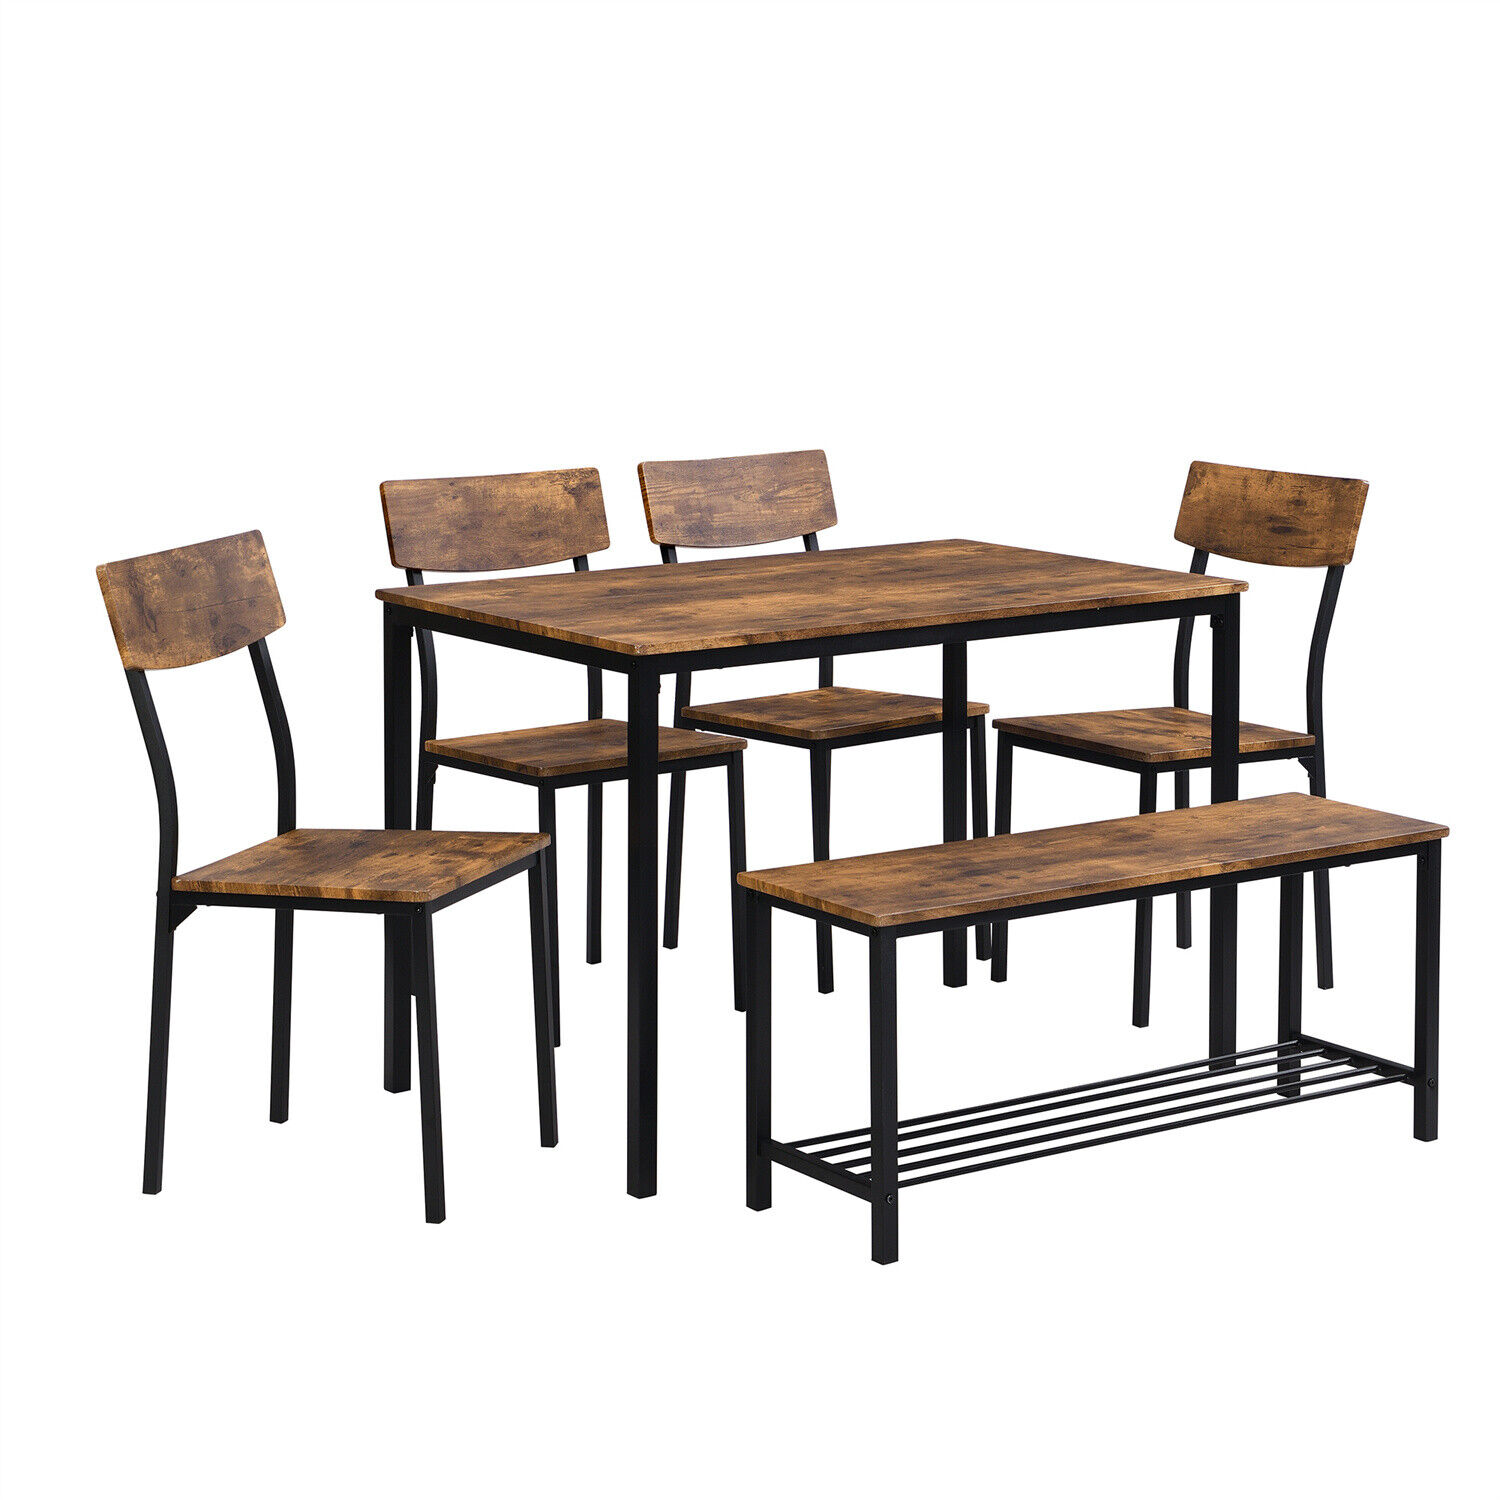 Essgruppe Esstisch mit 4 Stühle Sitzbank Esszimmergarnitur Küchentisch Stuhl Set